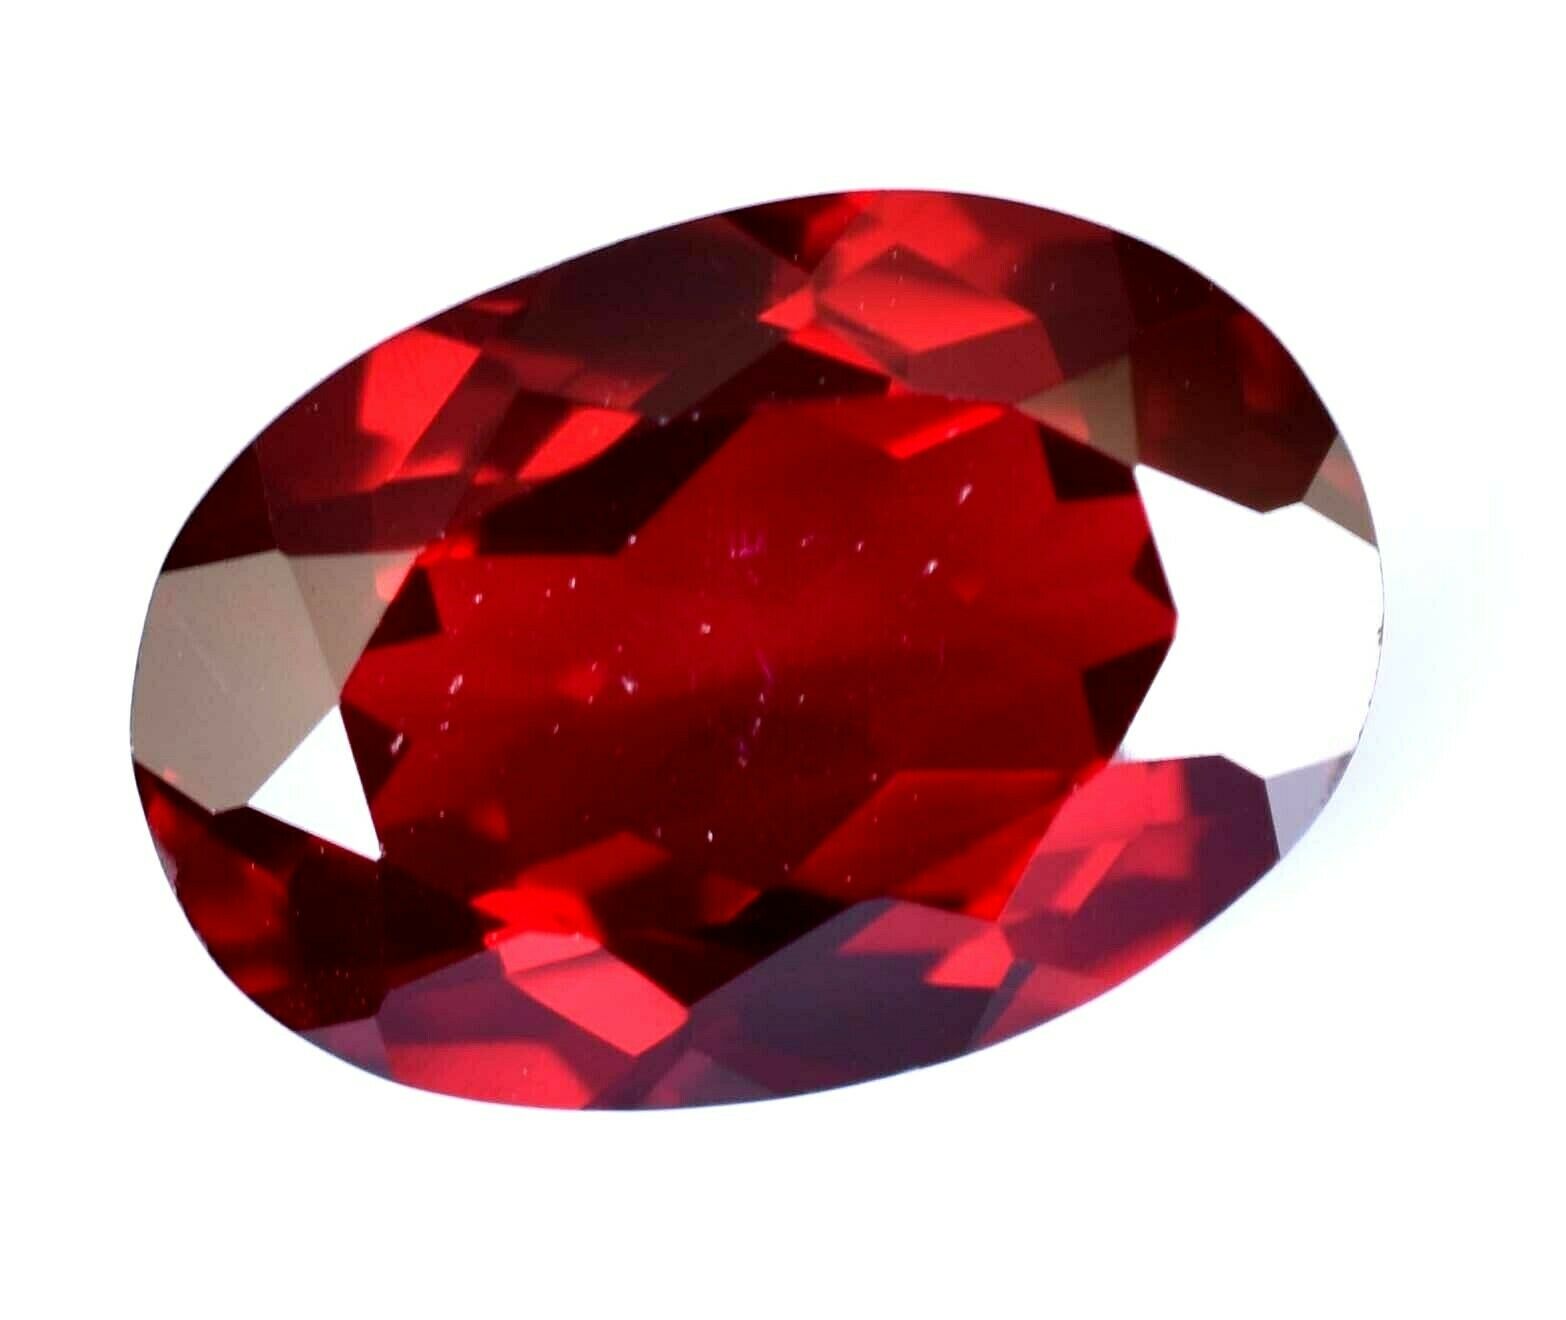 6.15 Ct Natural Red Color Almandine Garnet Oval Gemstone Agsl Certified